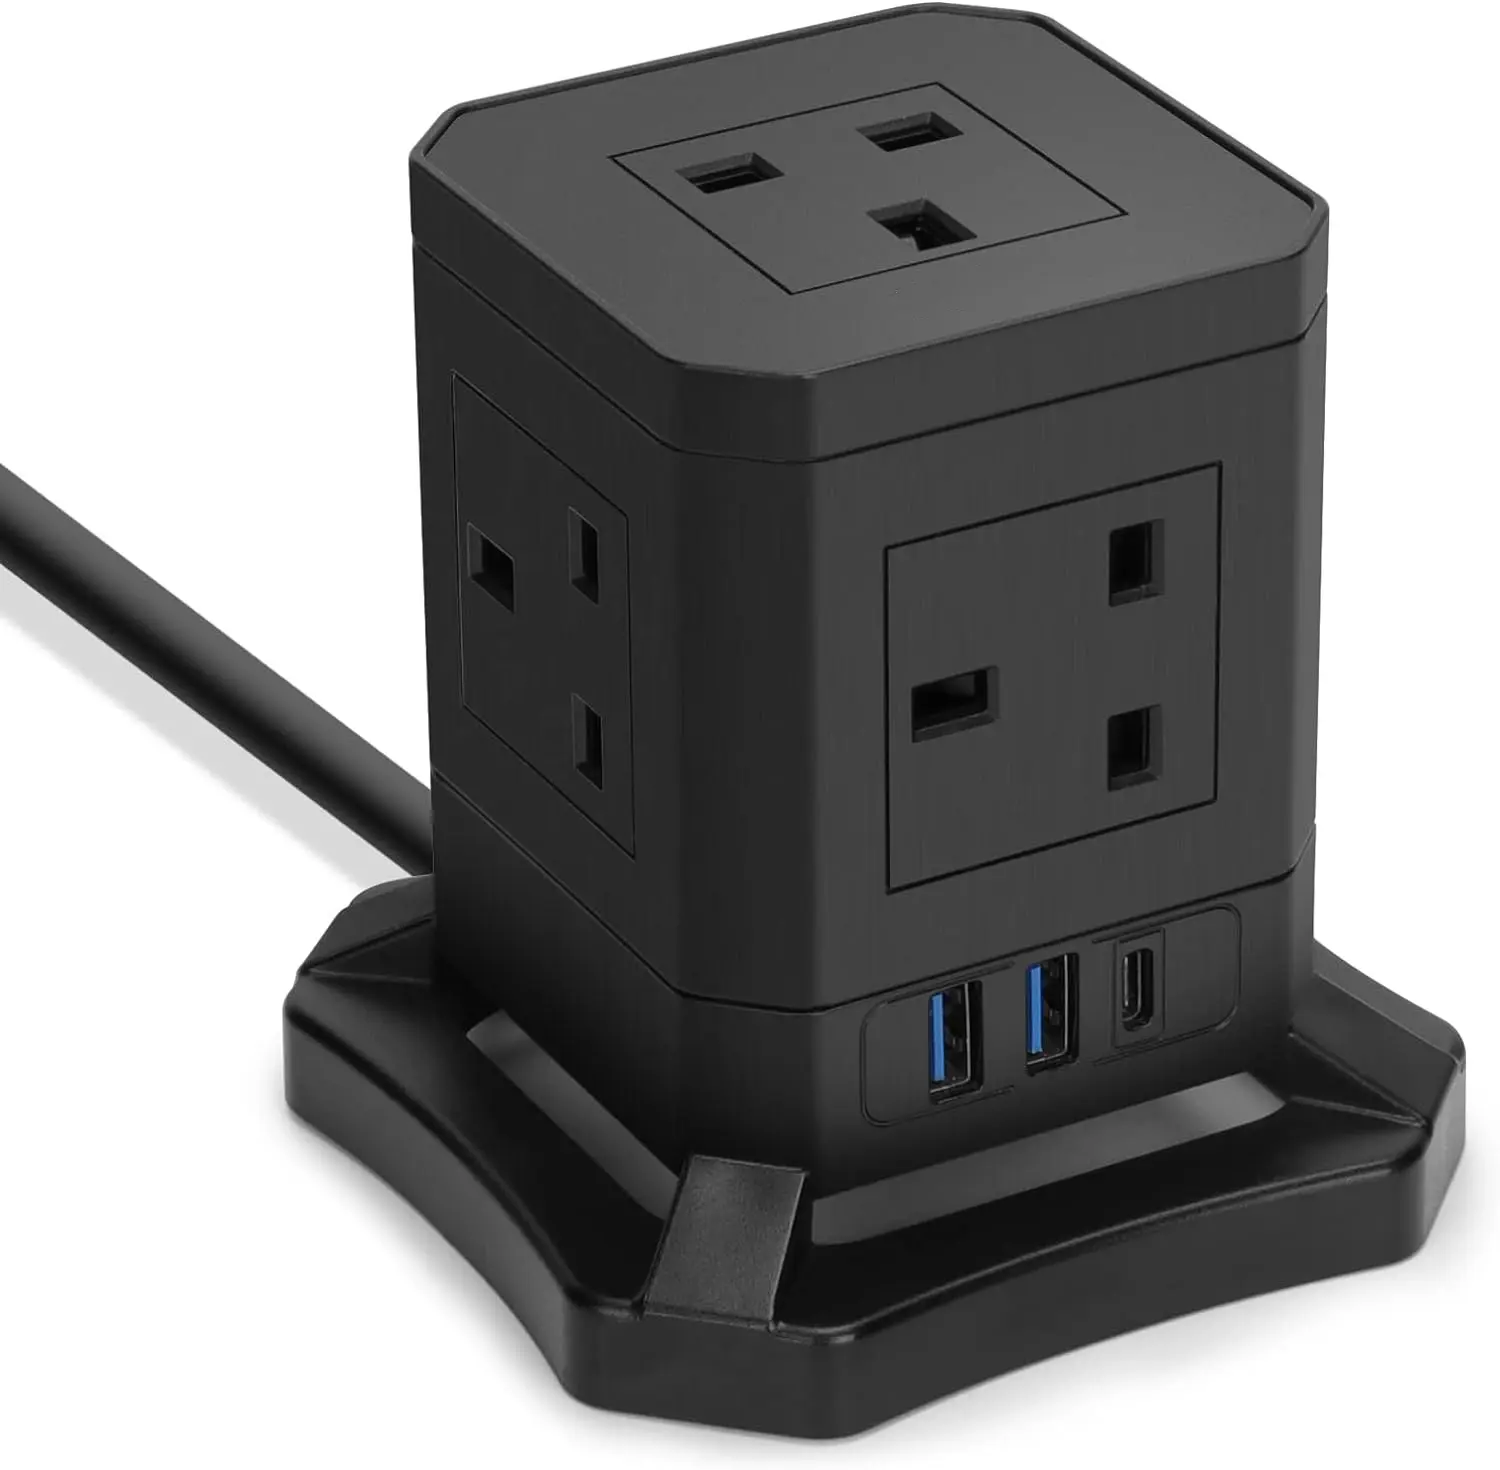 Cube удлинитель 5 Way Plug с 3 портами USB (1 USB-C),UK удлинитель питания с переключателем 2 м удлинитель для домашнего офиса общежитие